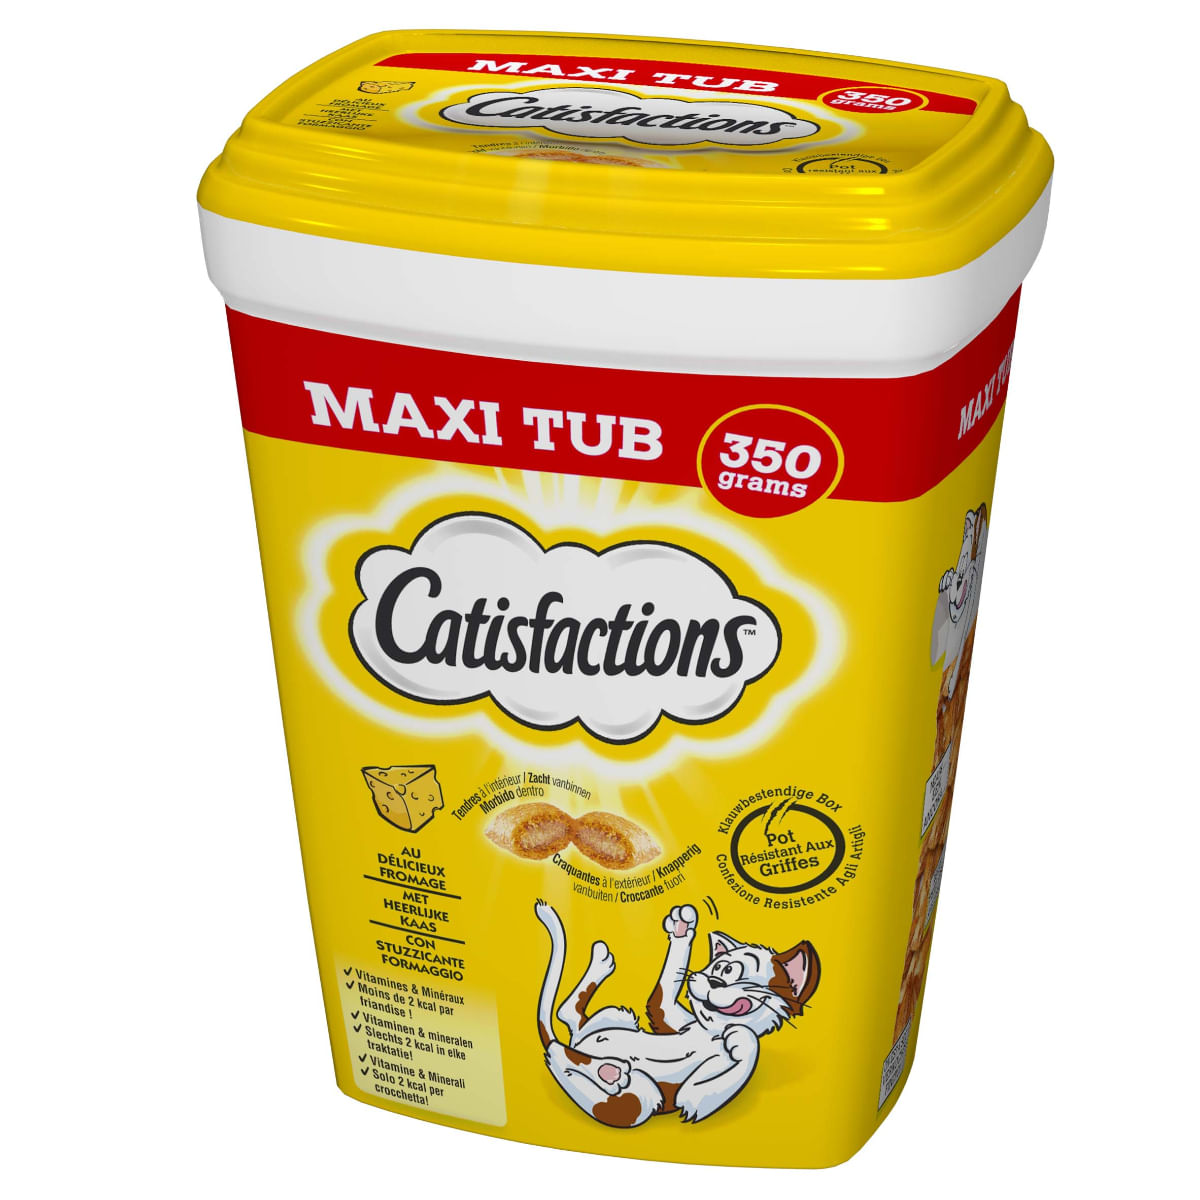 4x Catisfactions Maxi Tub con Formaggio 350gr